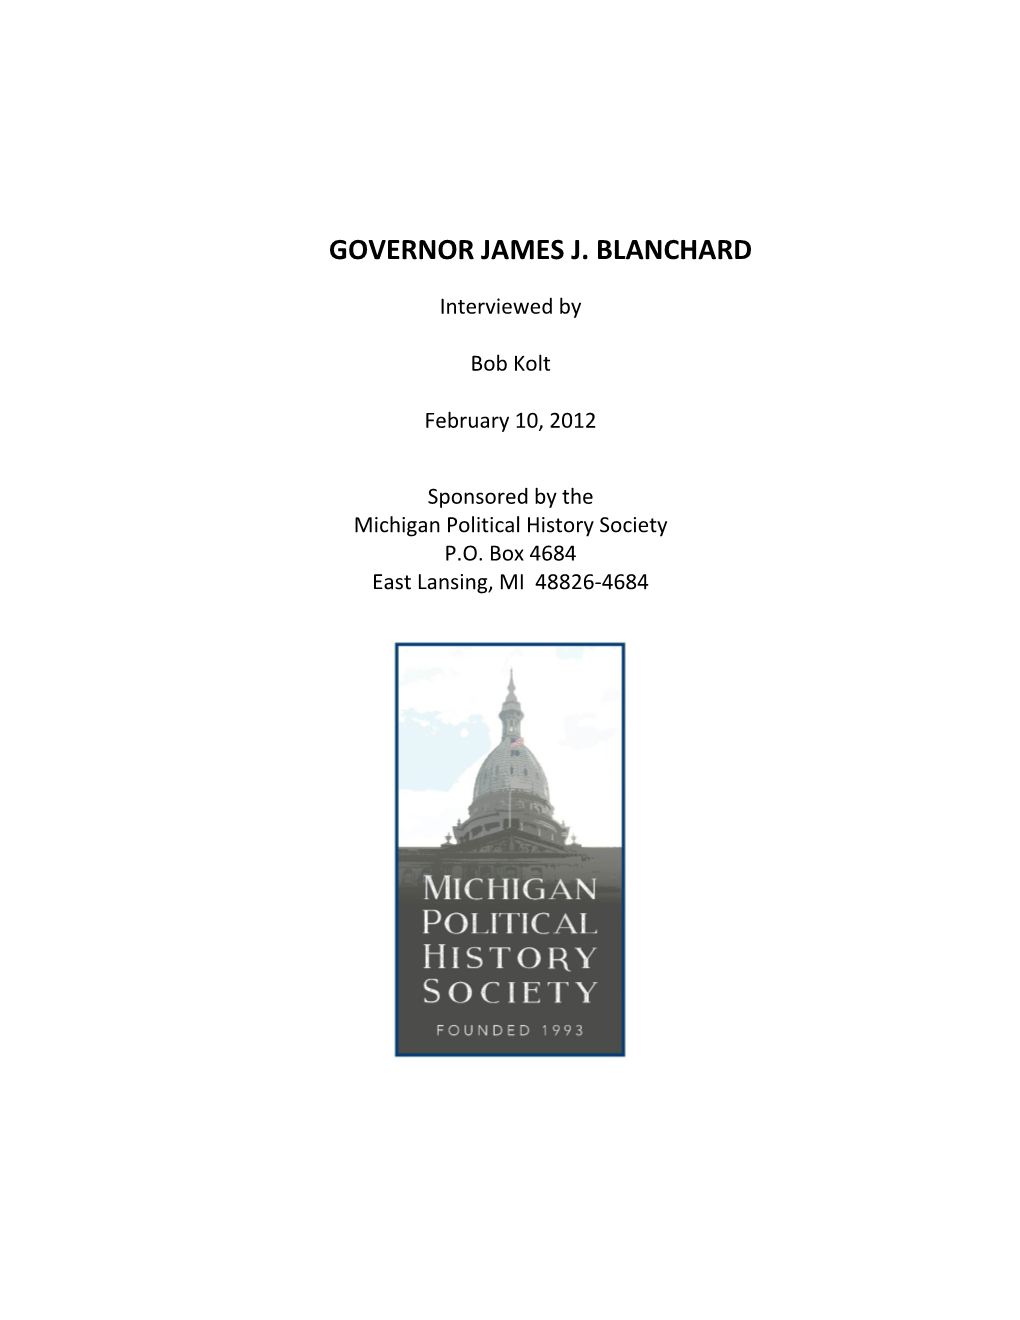 Governor James J. Blanchard